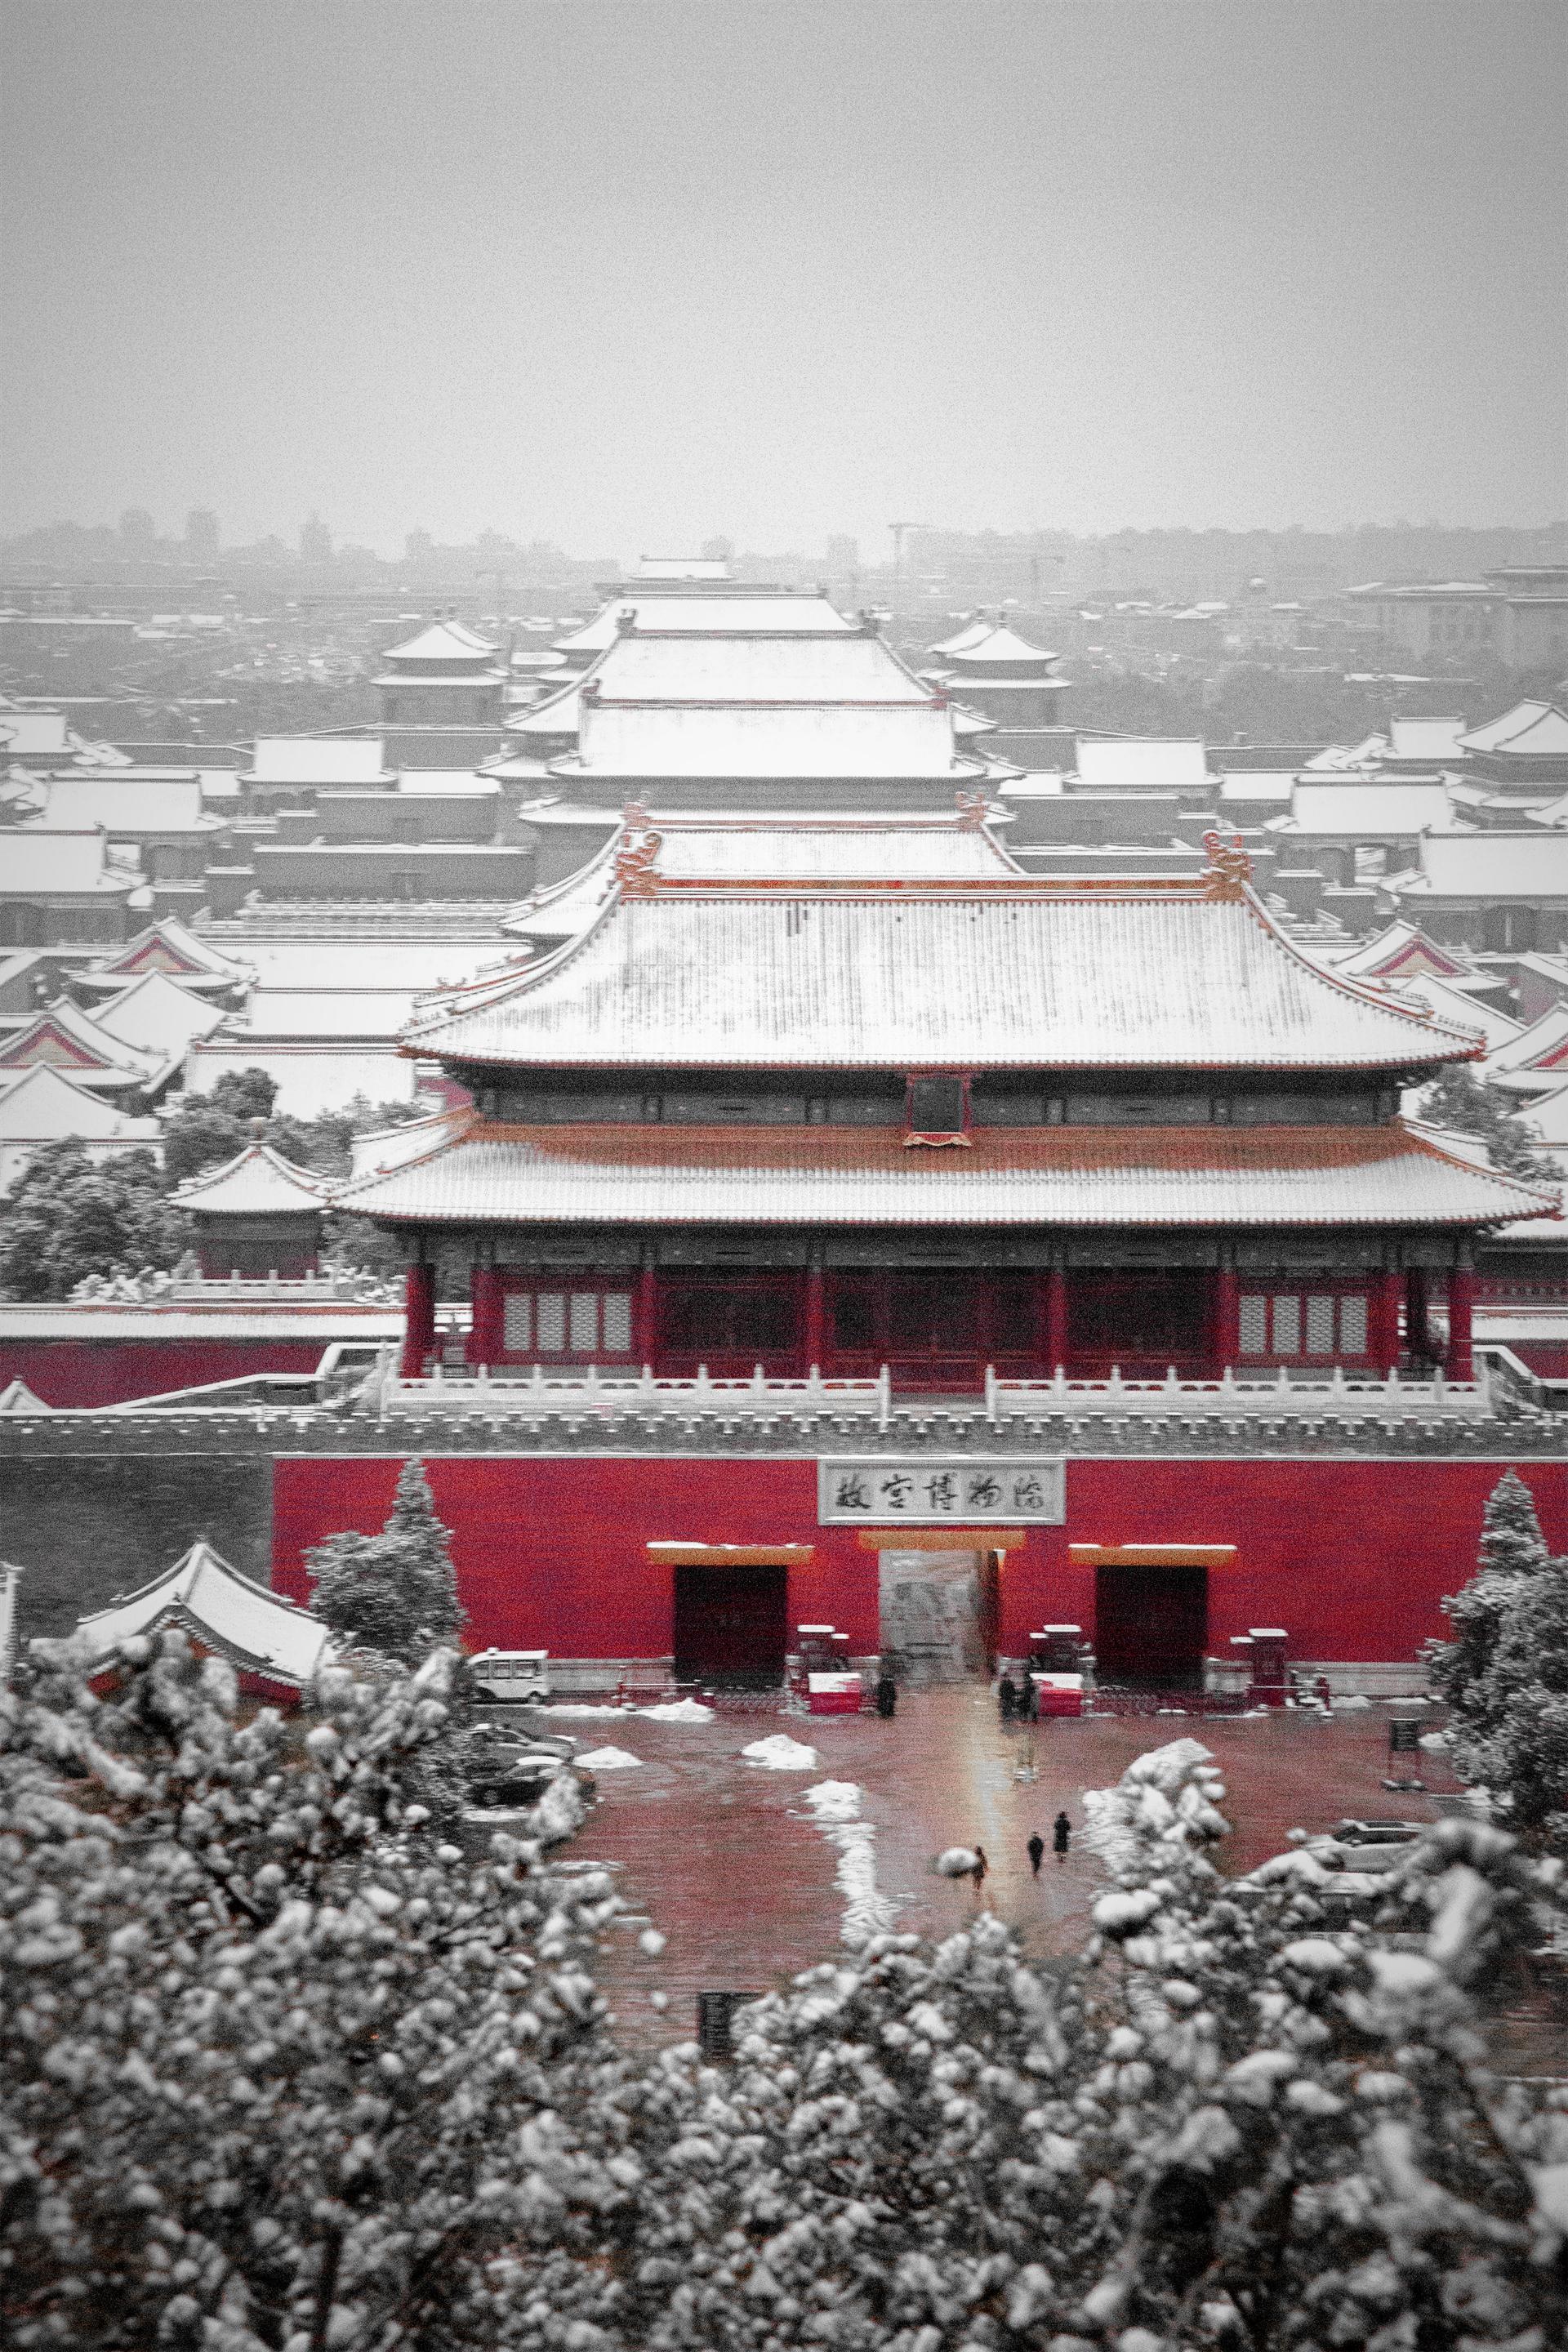 骞味 的想法: 北京初雪,故宫博物院披上瑞雪新装